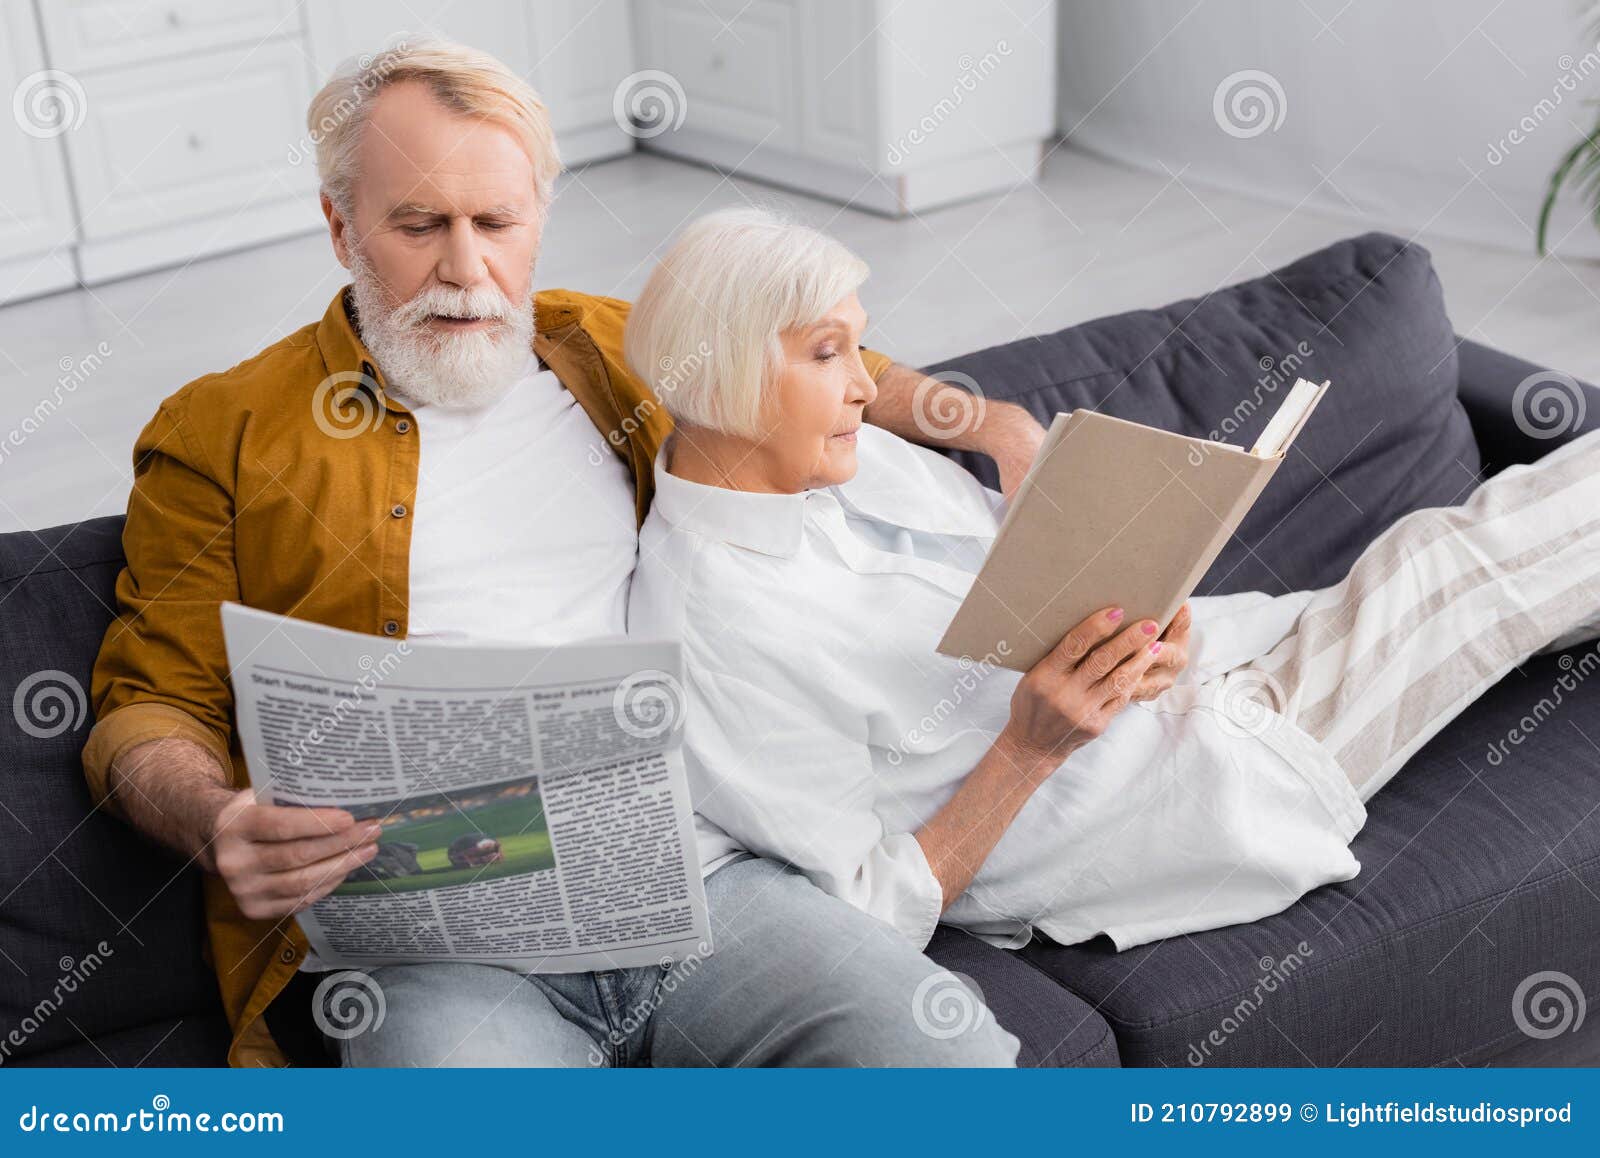 沙发选对了，也可以为老年人提供安全舒适的养老环境！ - 知乎